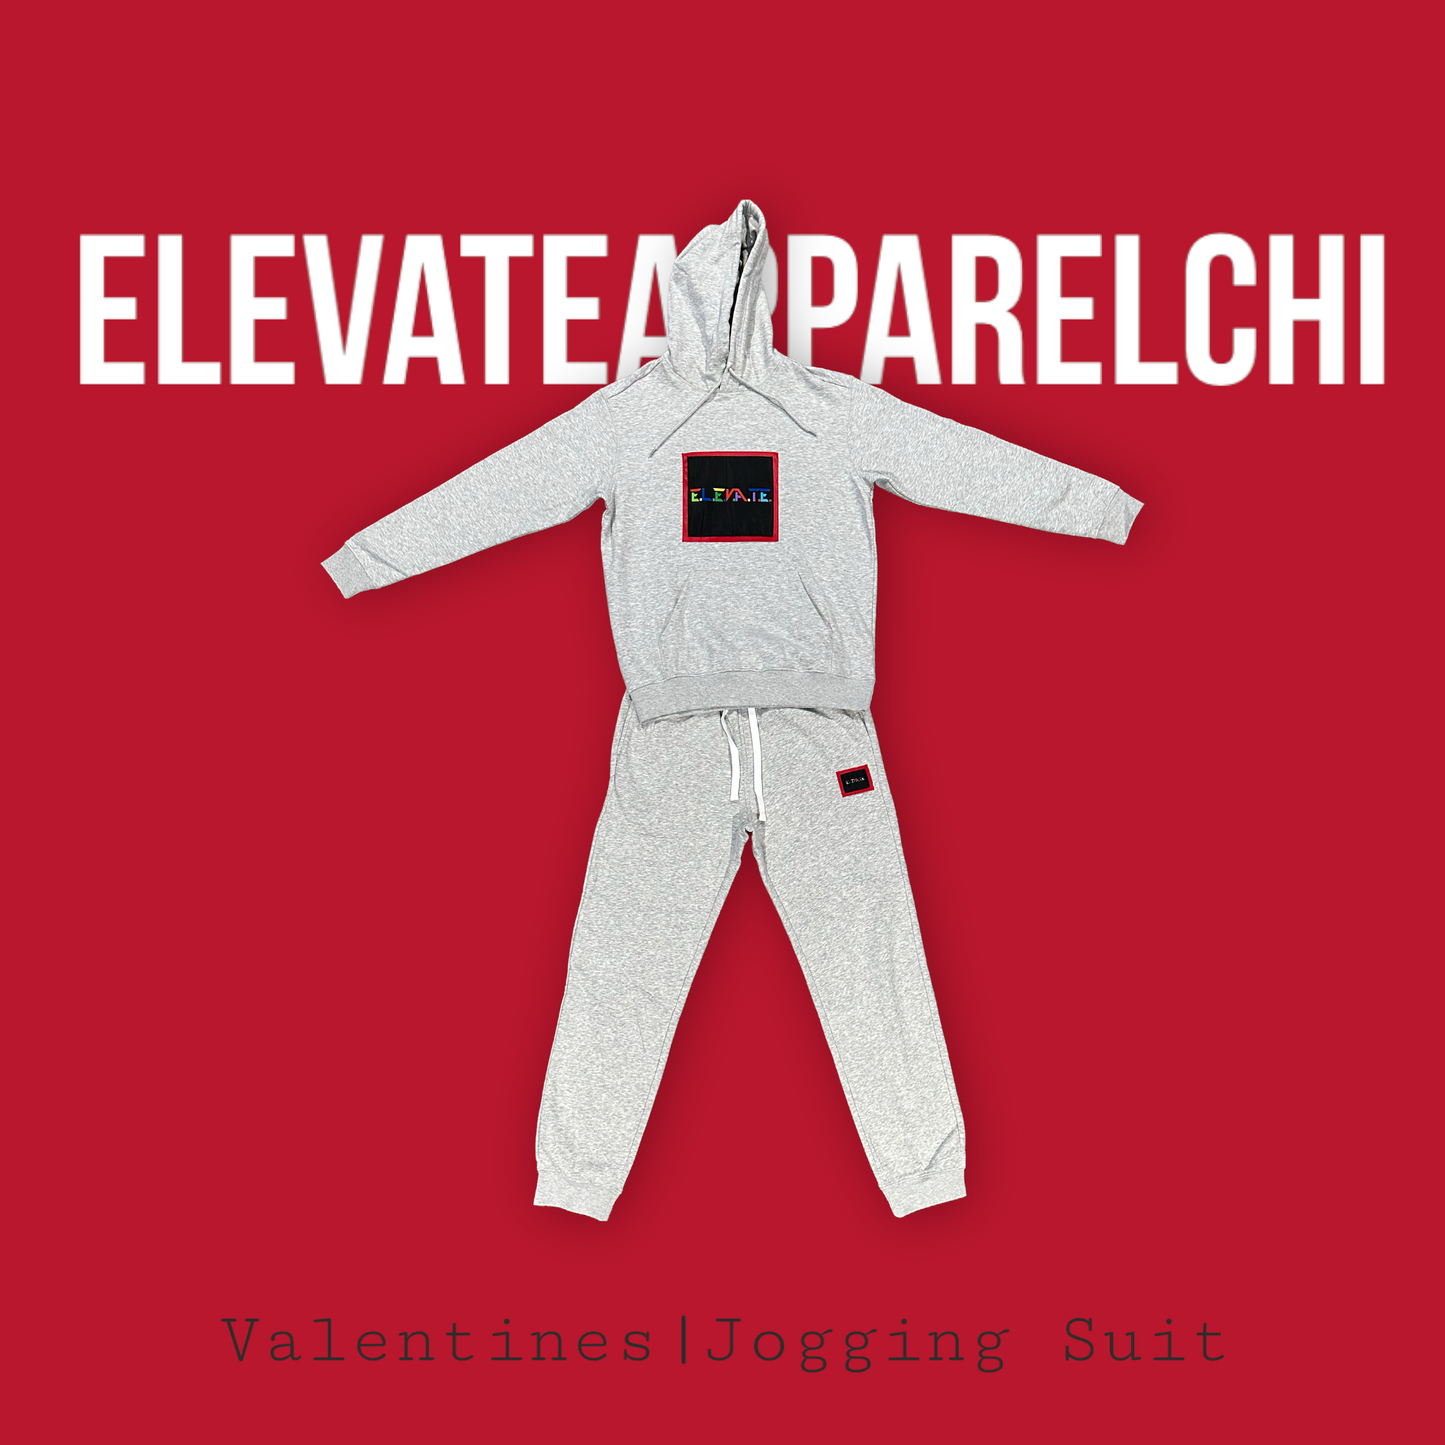 Valentine Jogging Suit